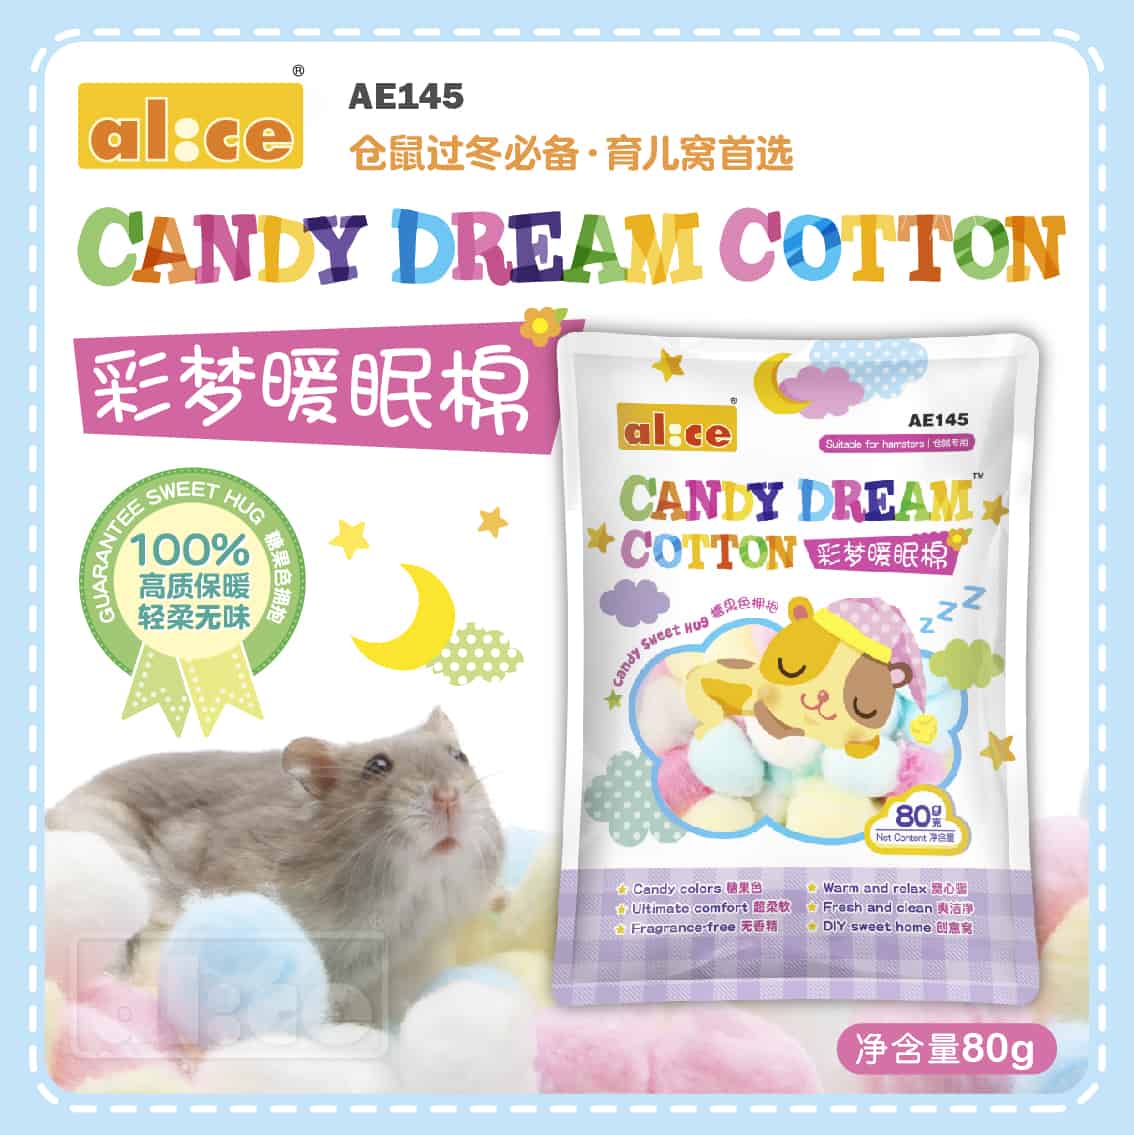 Alice AE145 Candy Dream Cotton 80g